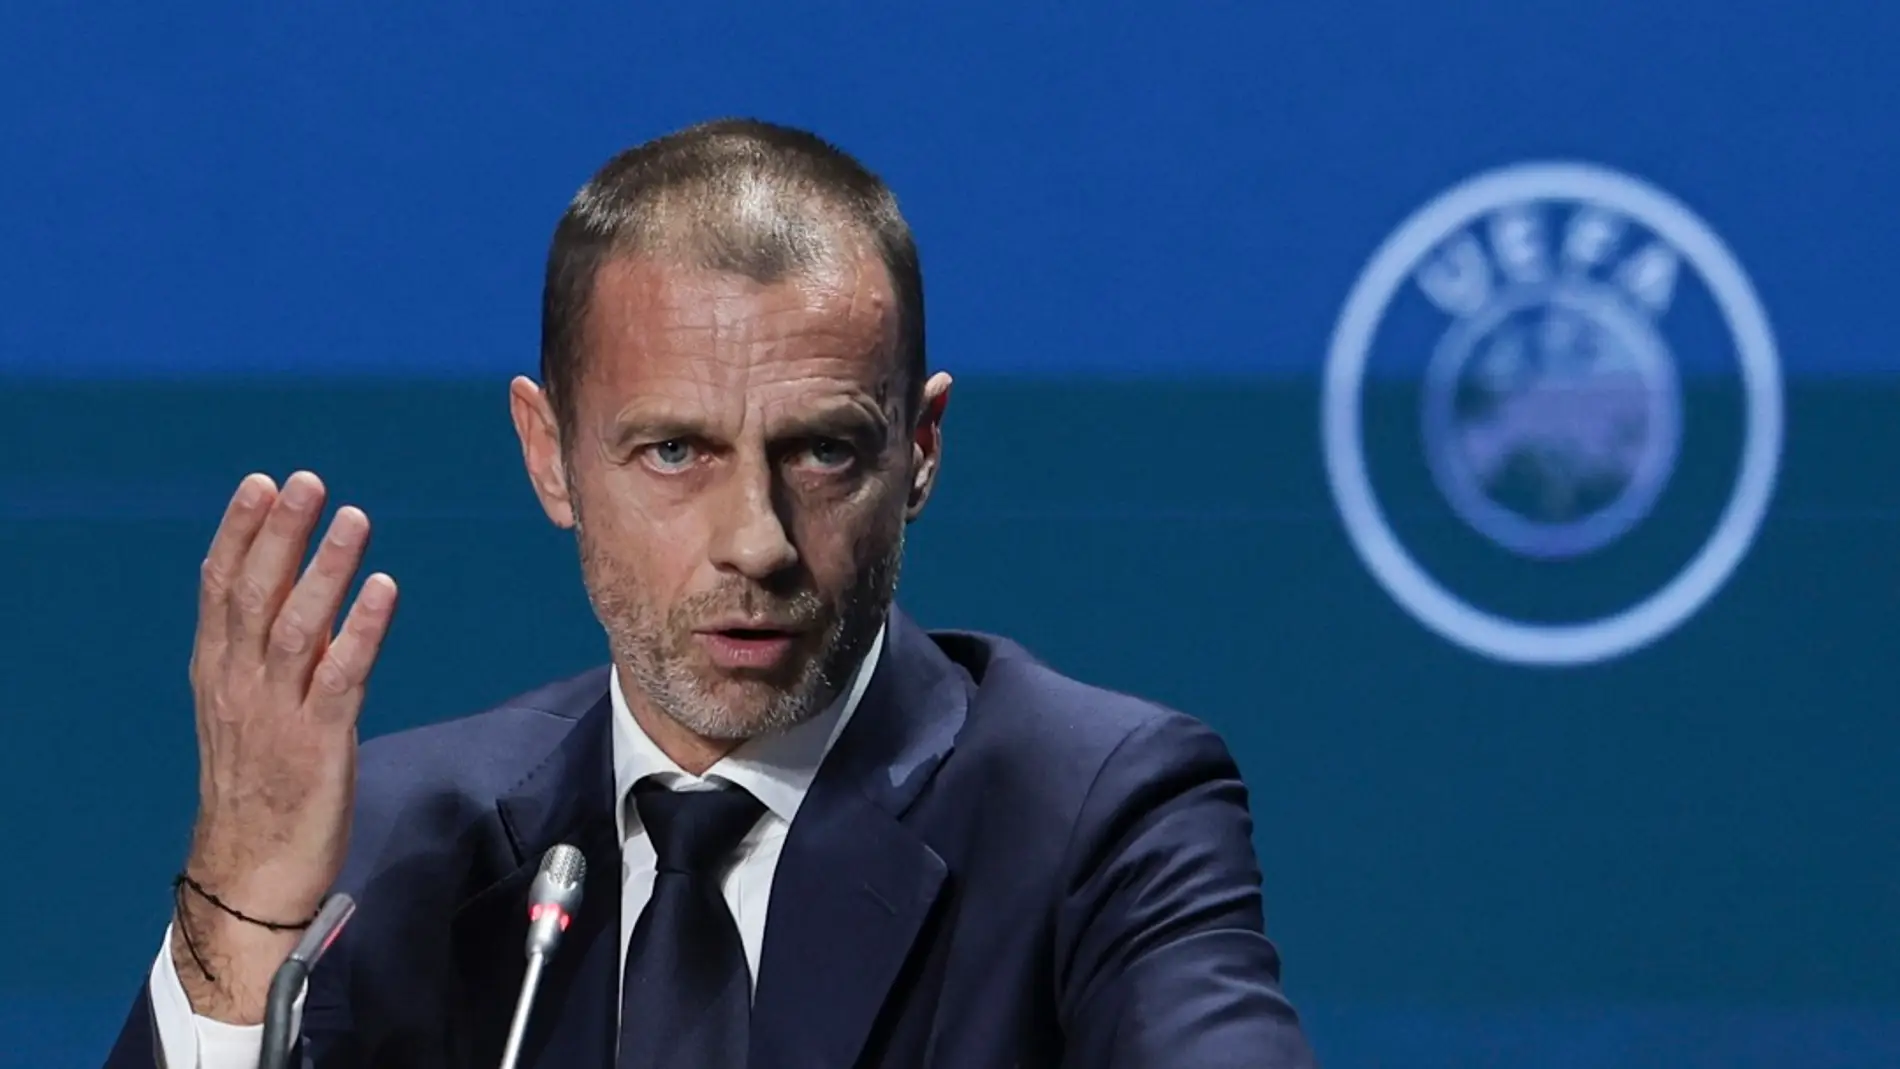  Ceferin, reelegido presidente de UEFA